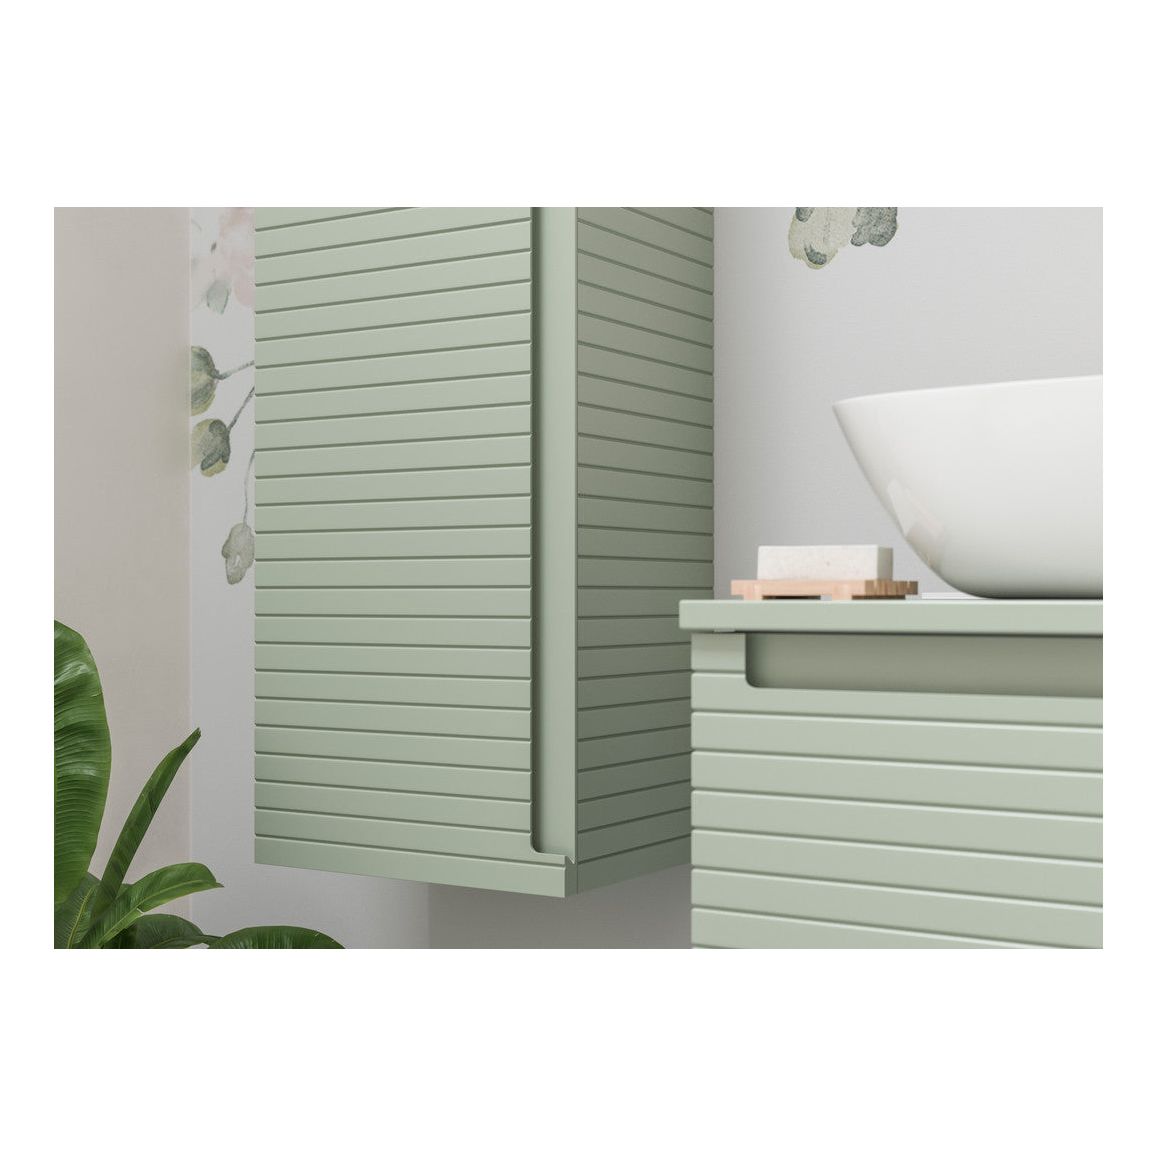 Mueble de lavabo y lavabo suspendido de 615 mm con 1 cajón en color castaño - Verde sauce mate